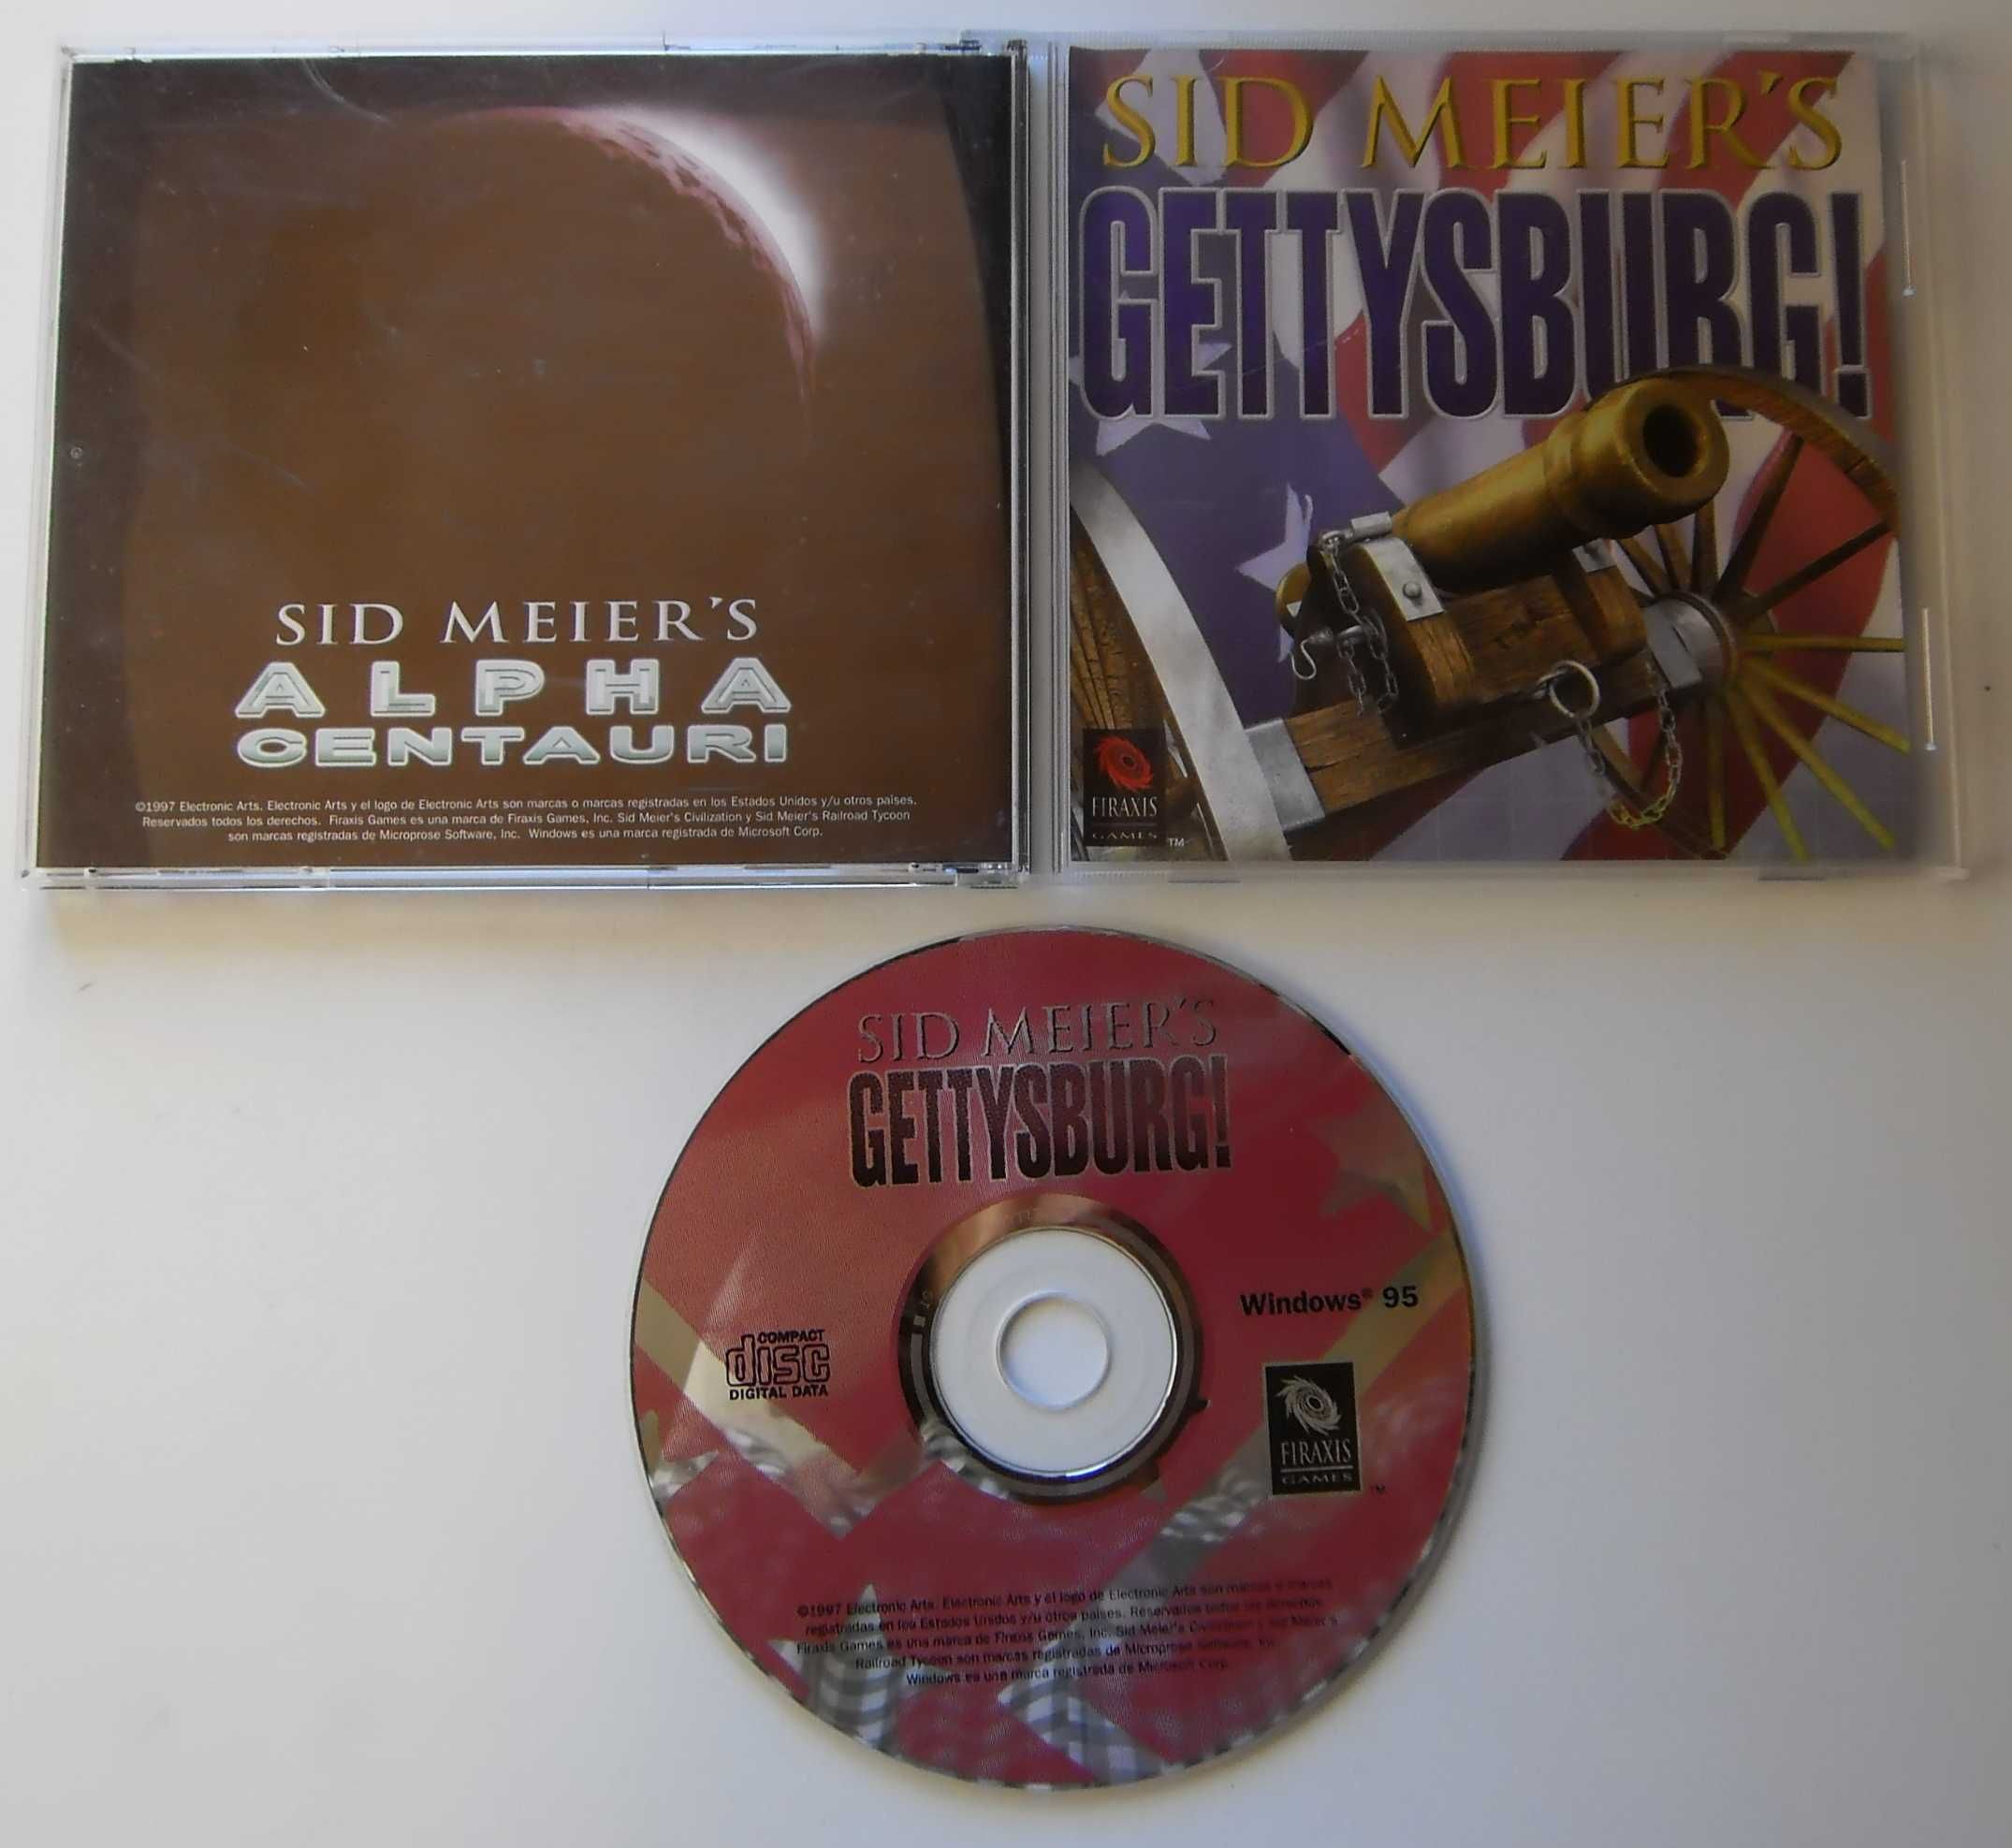 Jogo PC/CD-ROM "Sid Meier's Gettysburg" 1 CD / Ano 1997